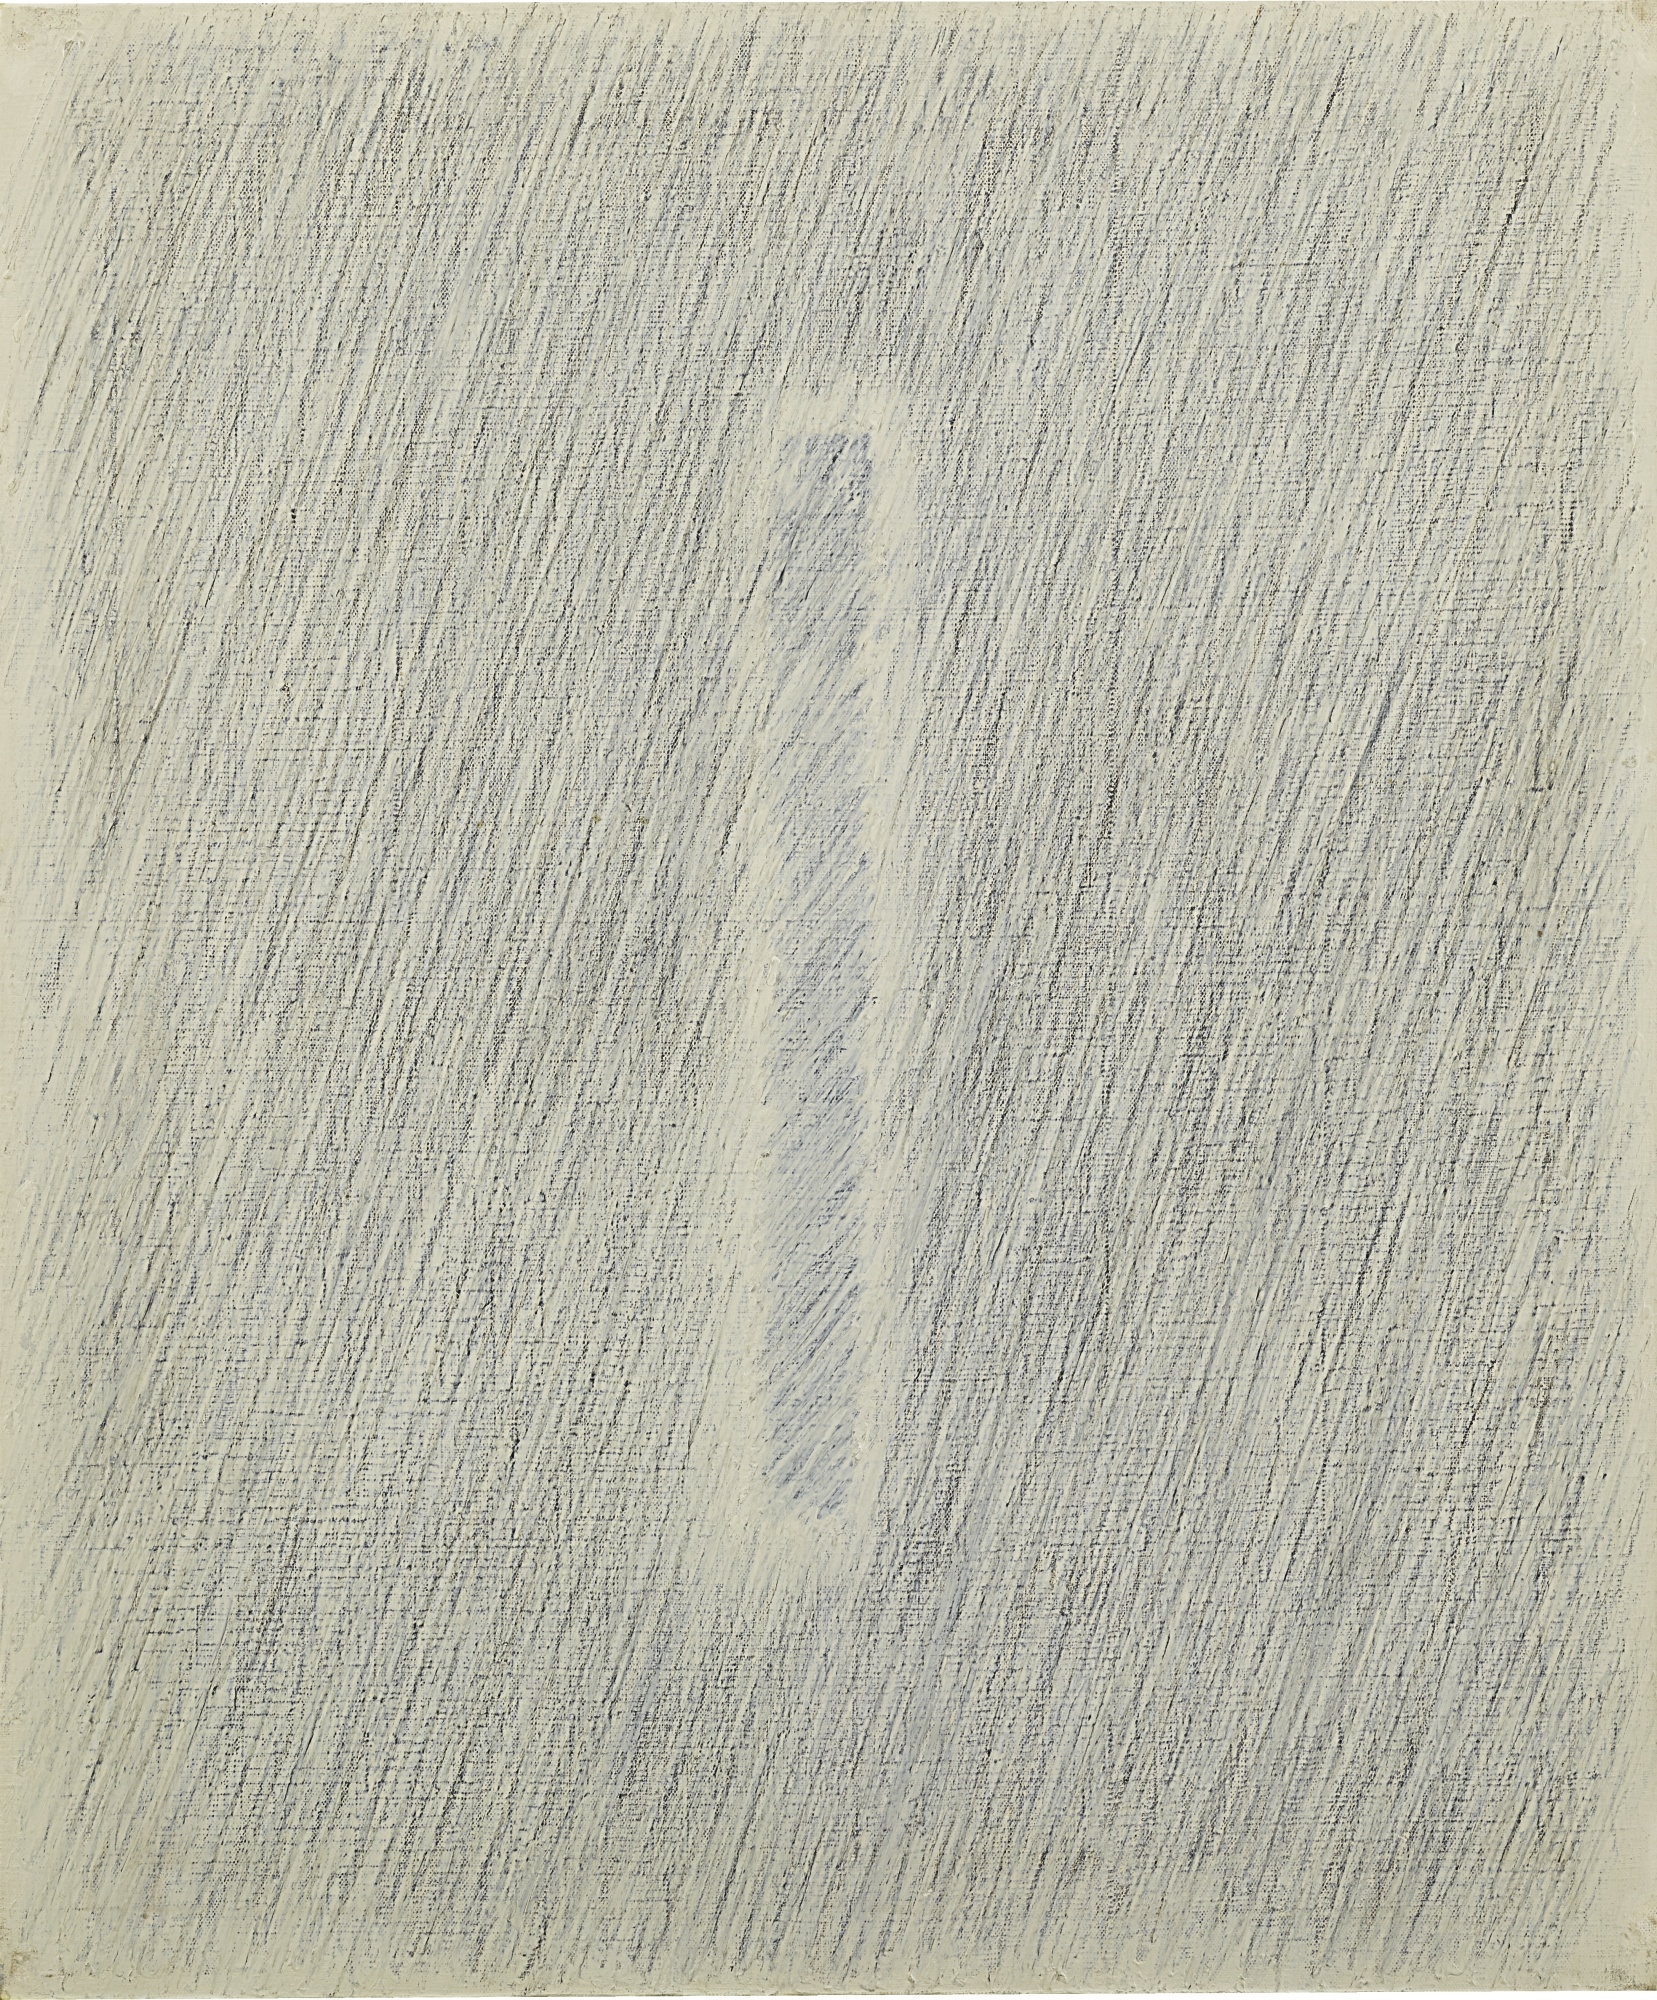 Park Seo-Bo, Ecriture (描法) No. 235-85, 1985